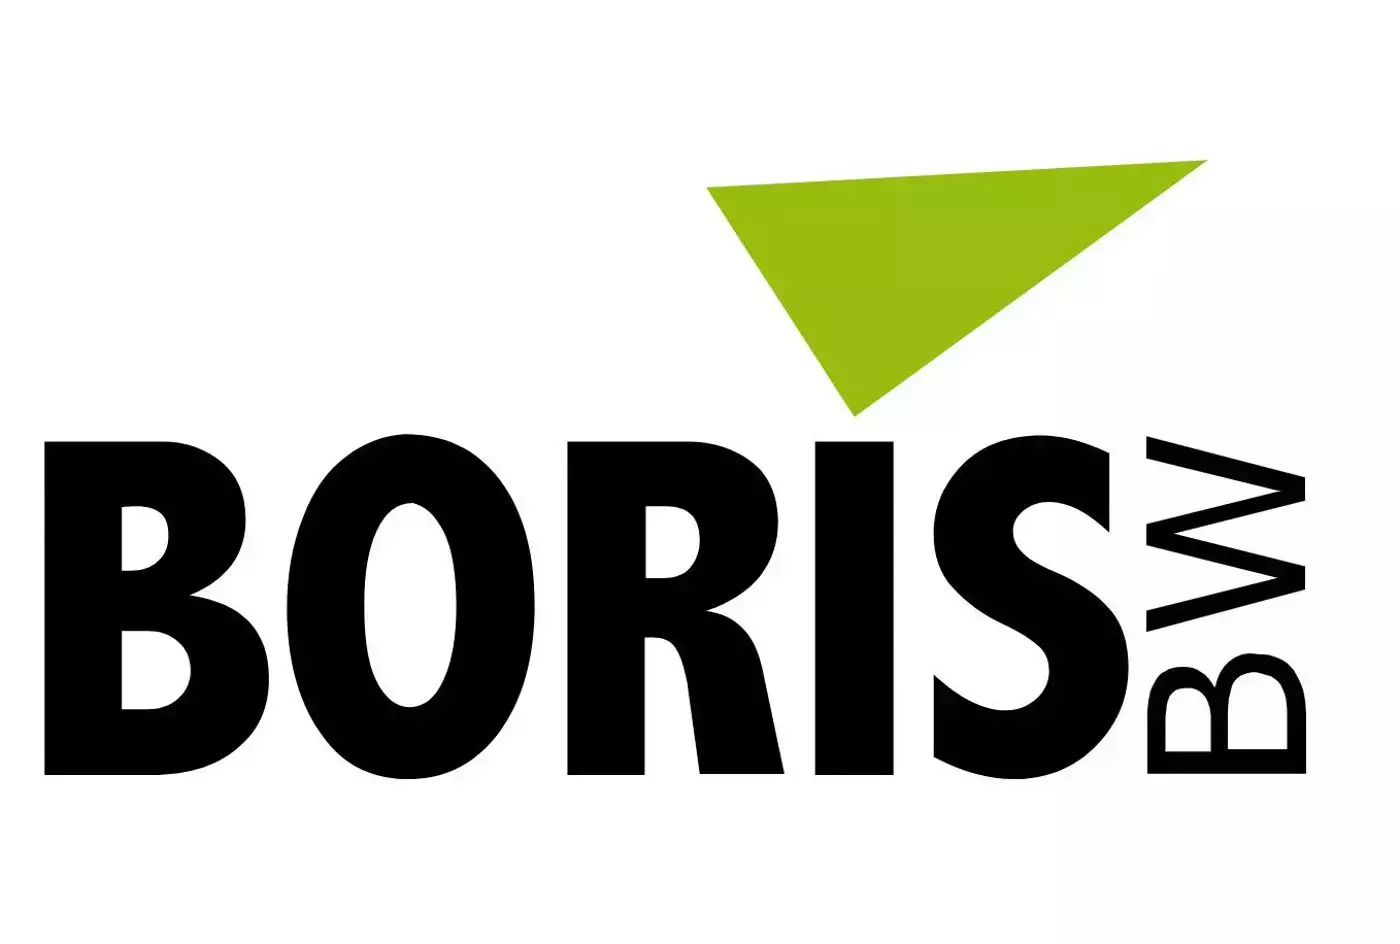 Logo BORIS Baden-Wrttemberg